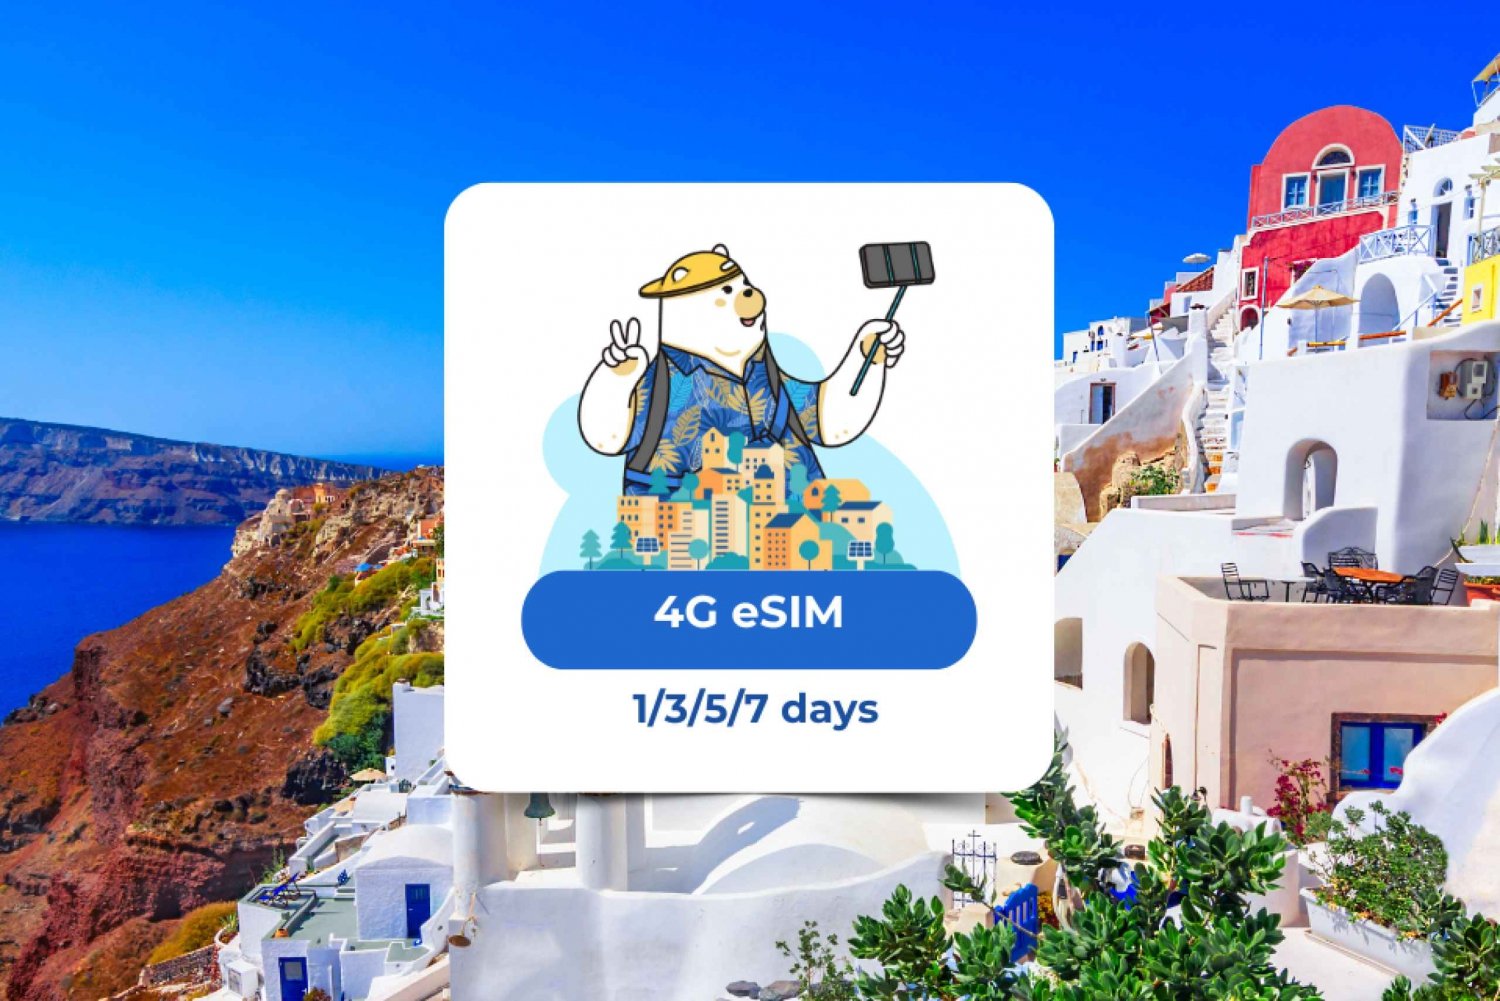 Eurooppa: eSIM Mobile Data (40 maata) 1/3/5/7 päivää